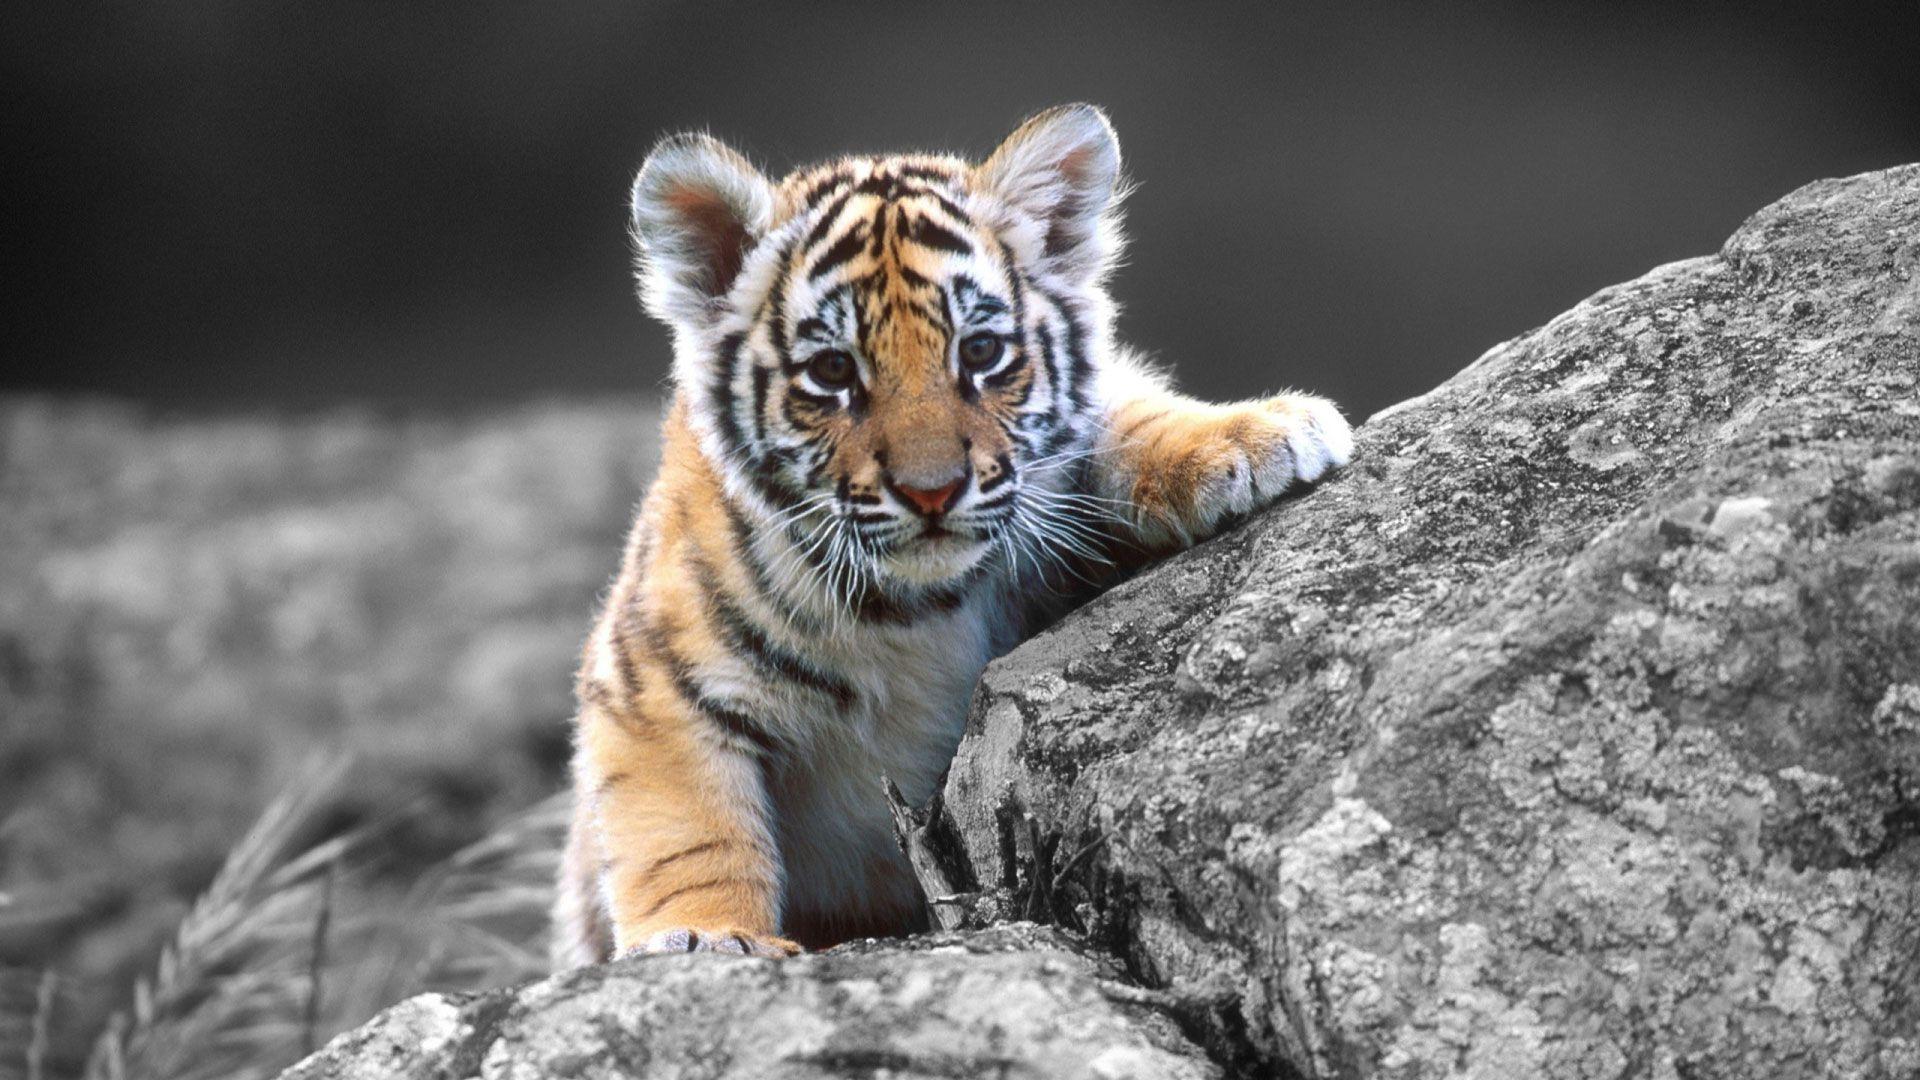 Cute Tiger Wallpapers - Top Những Hình Ảnh Đẹp